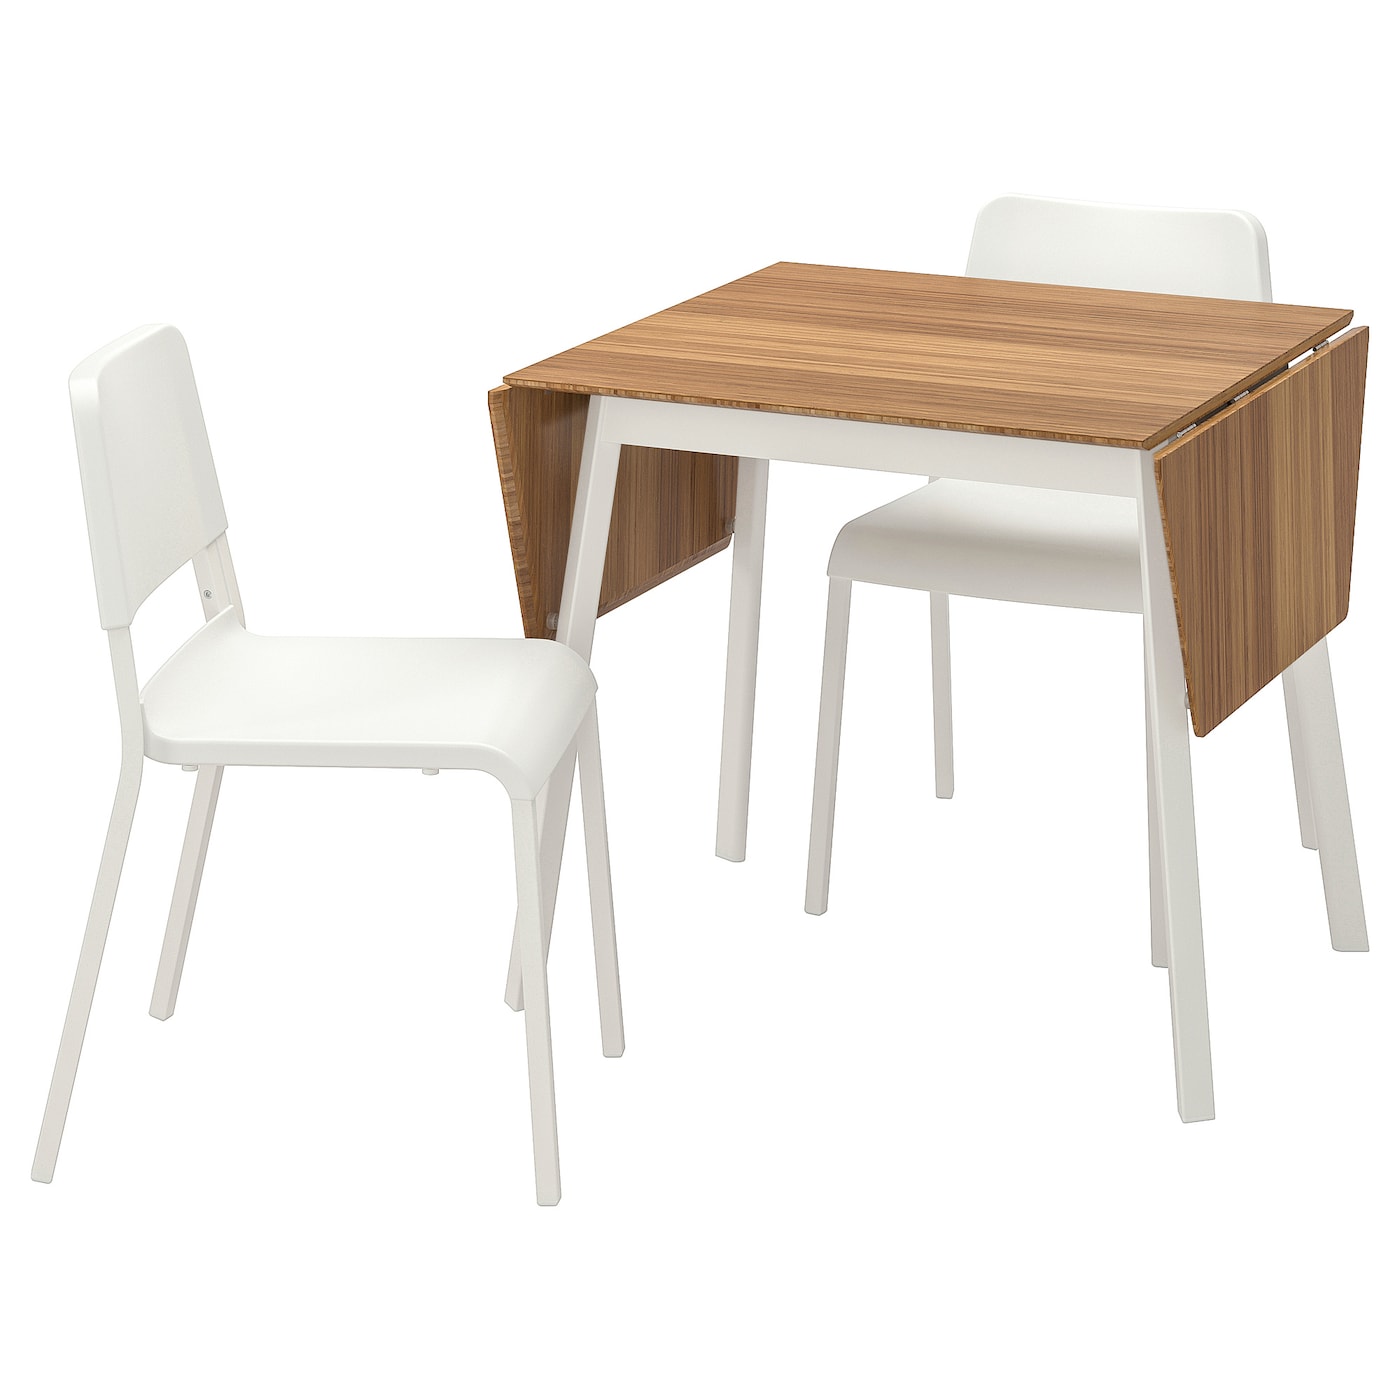 Стол и 2 стула - PS 2012 / TEODORES IKEA/ ТЕОДОРЕС ИКЕА, 81х76х10 см, белый